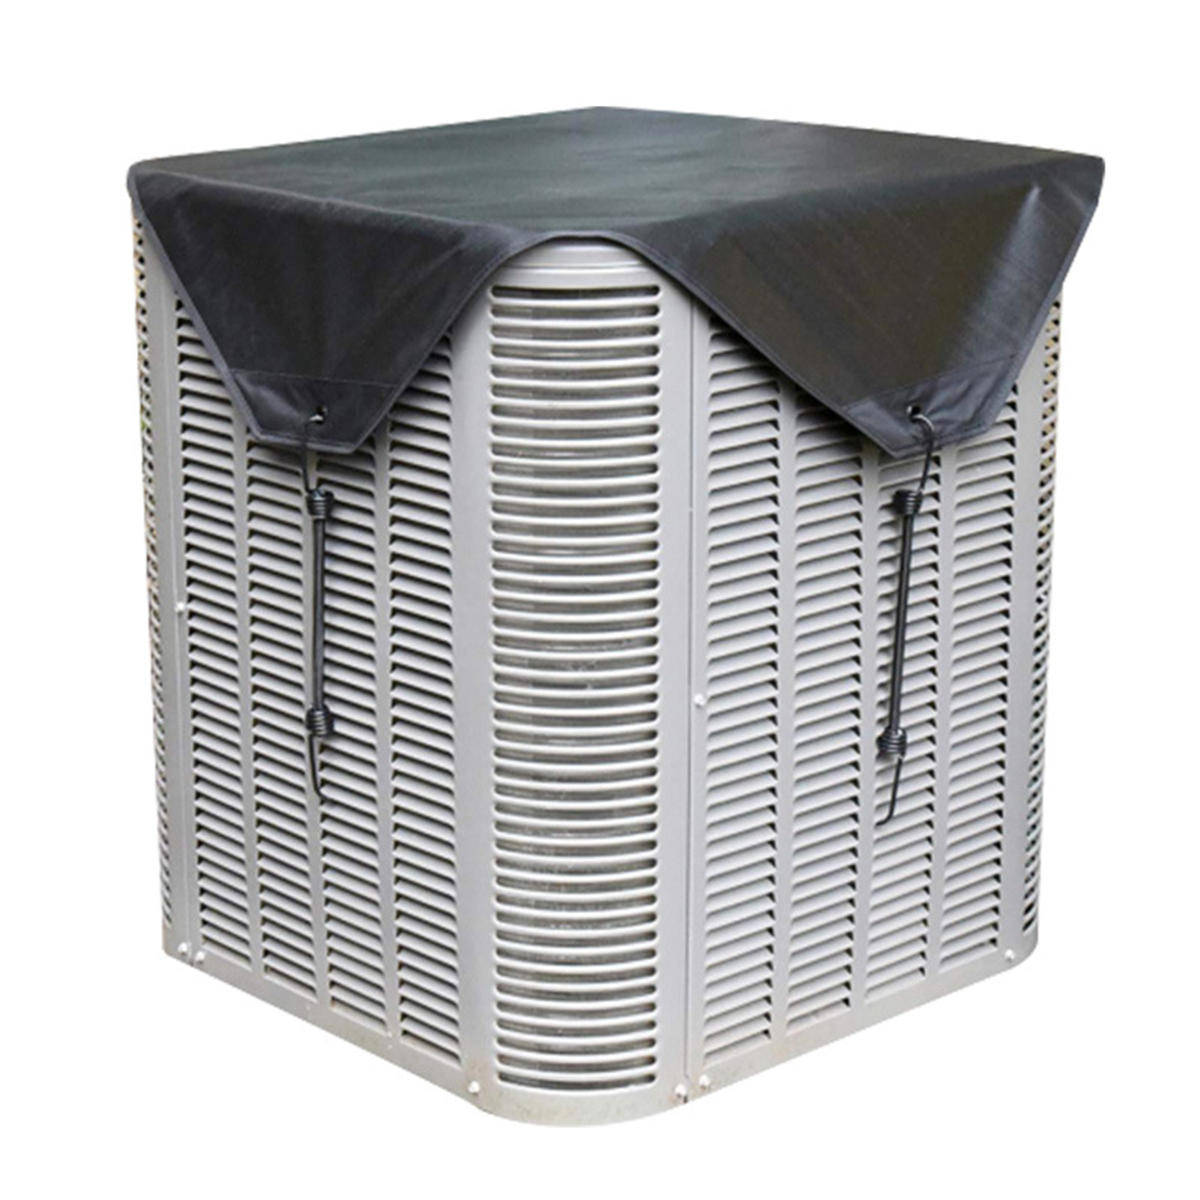 Airconditioner Cover Outdoor Mesh Waterdicht Oxford Doek Beschermhoes Stof Netto Koelventilator Cover